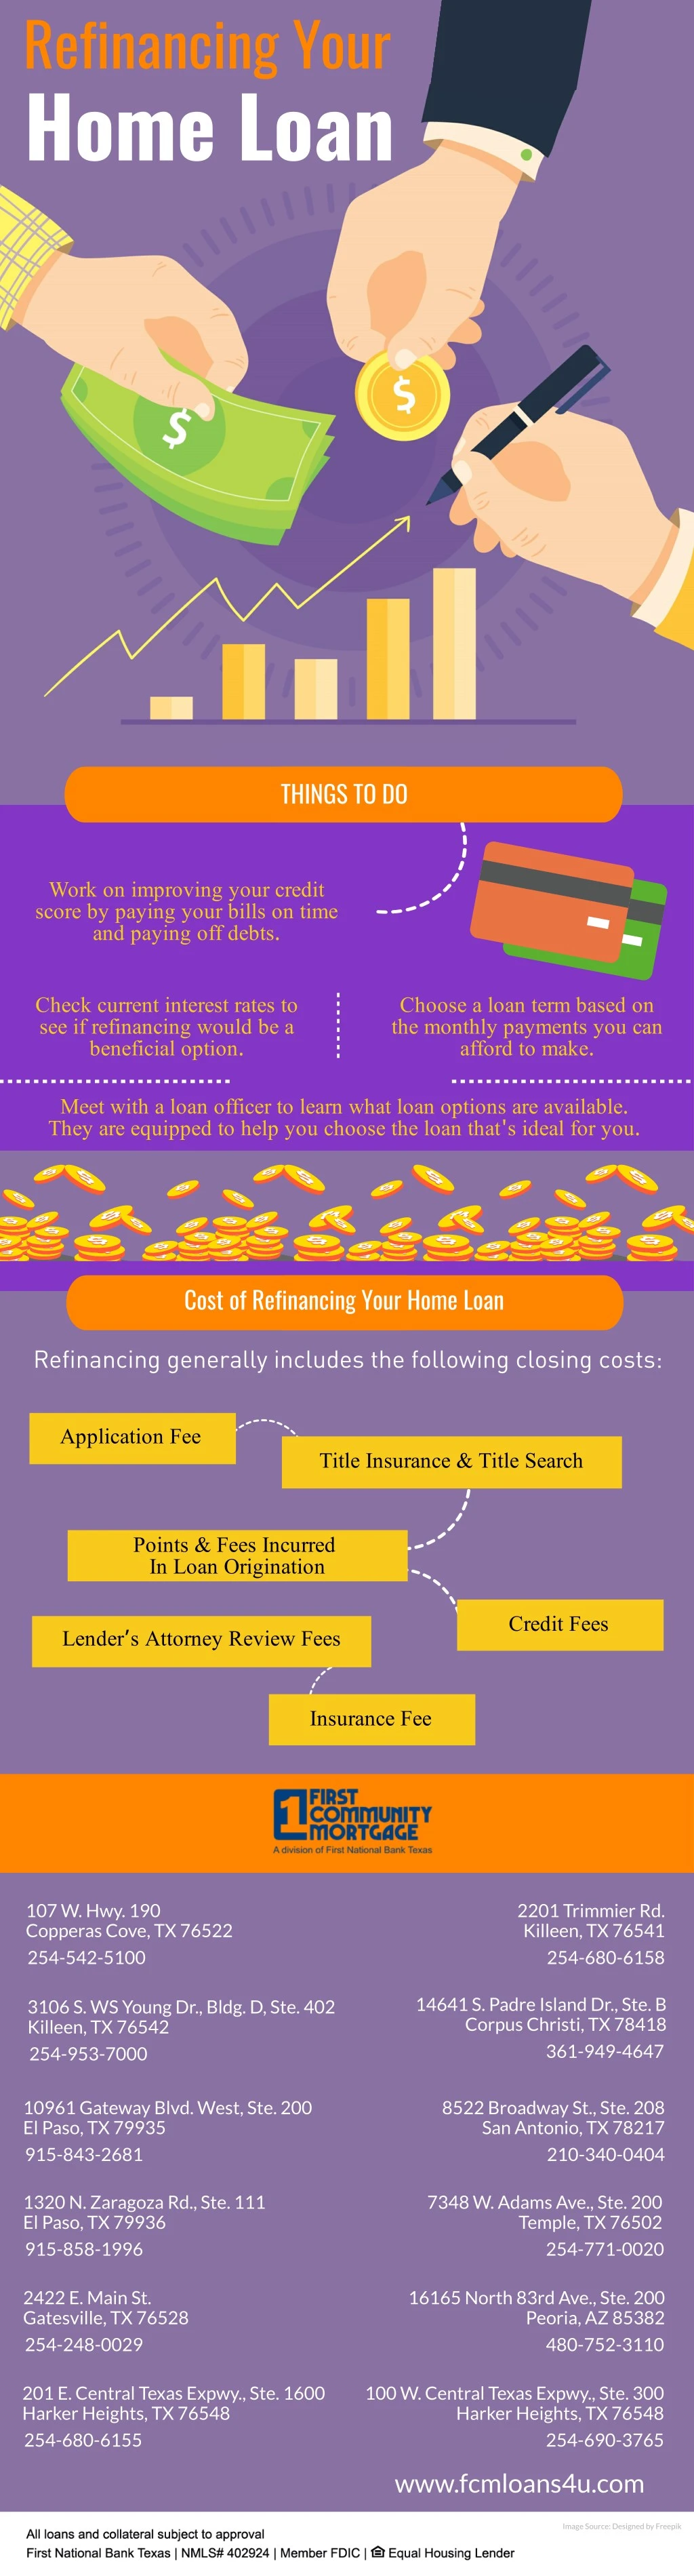 refinancing your